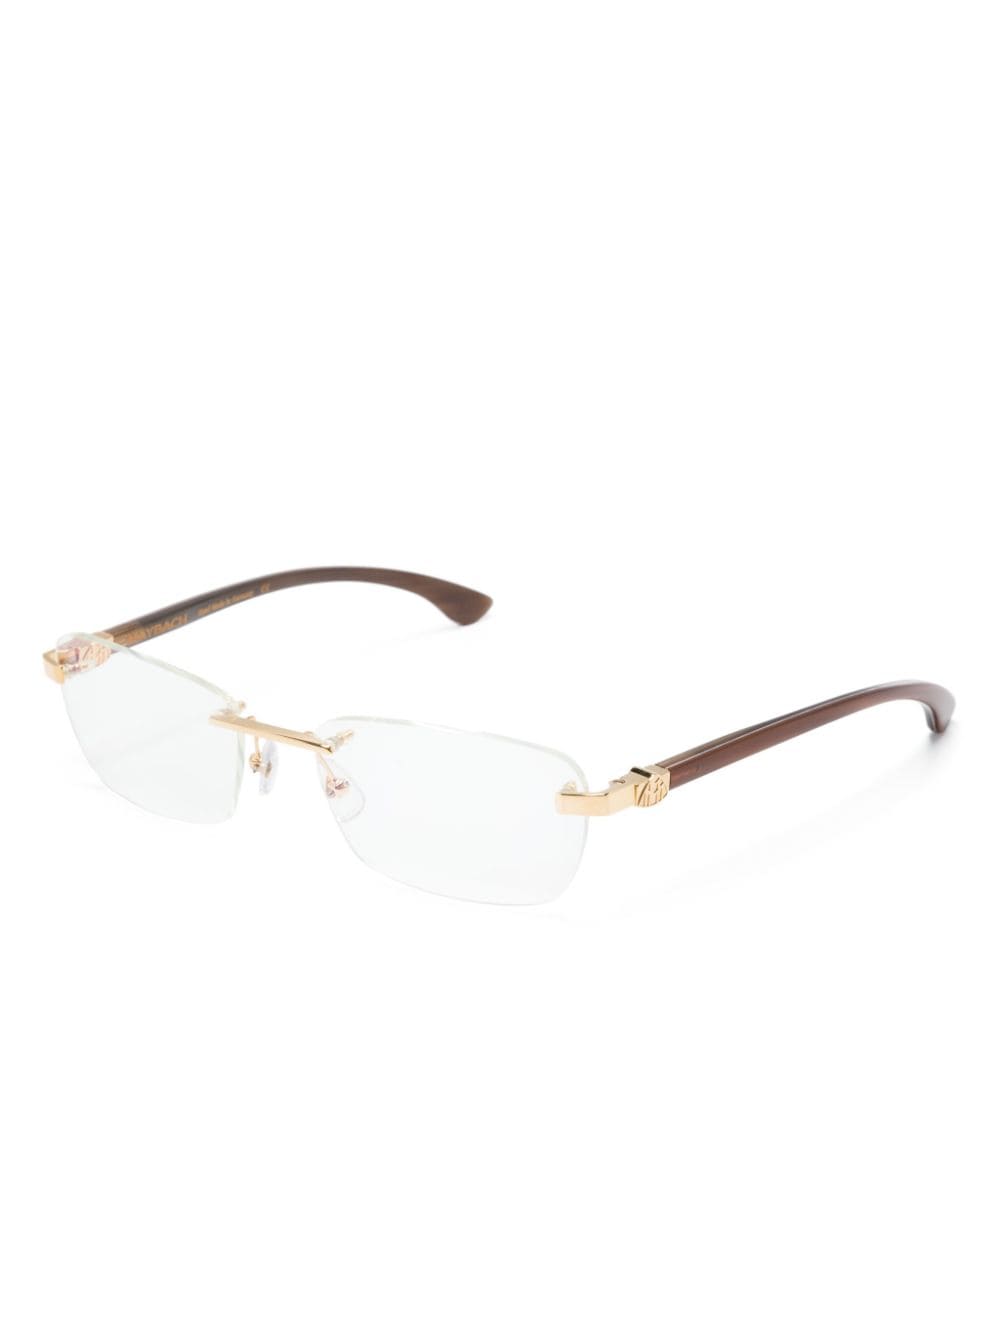 Maybach eyewear The Artist XII bril met randloos montuur - Goud